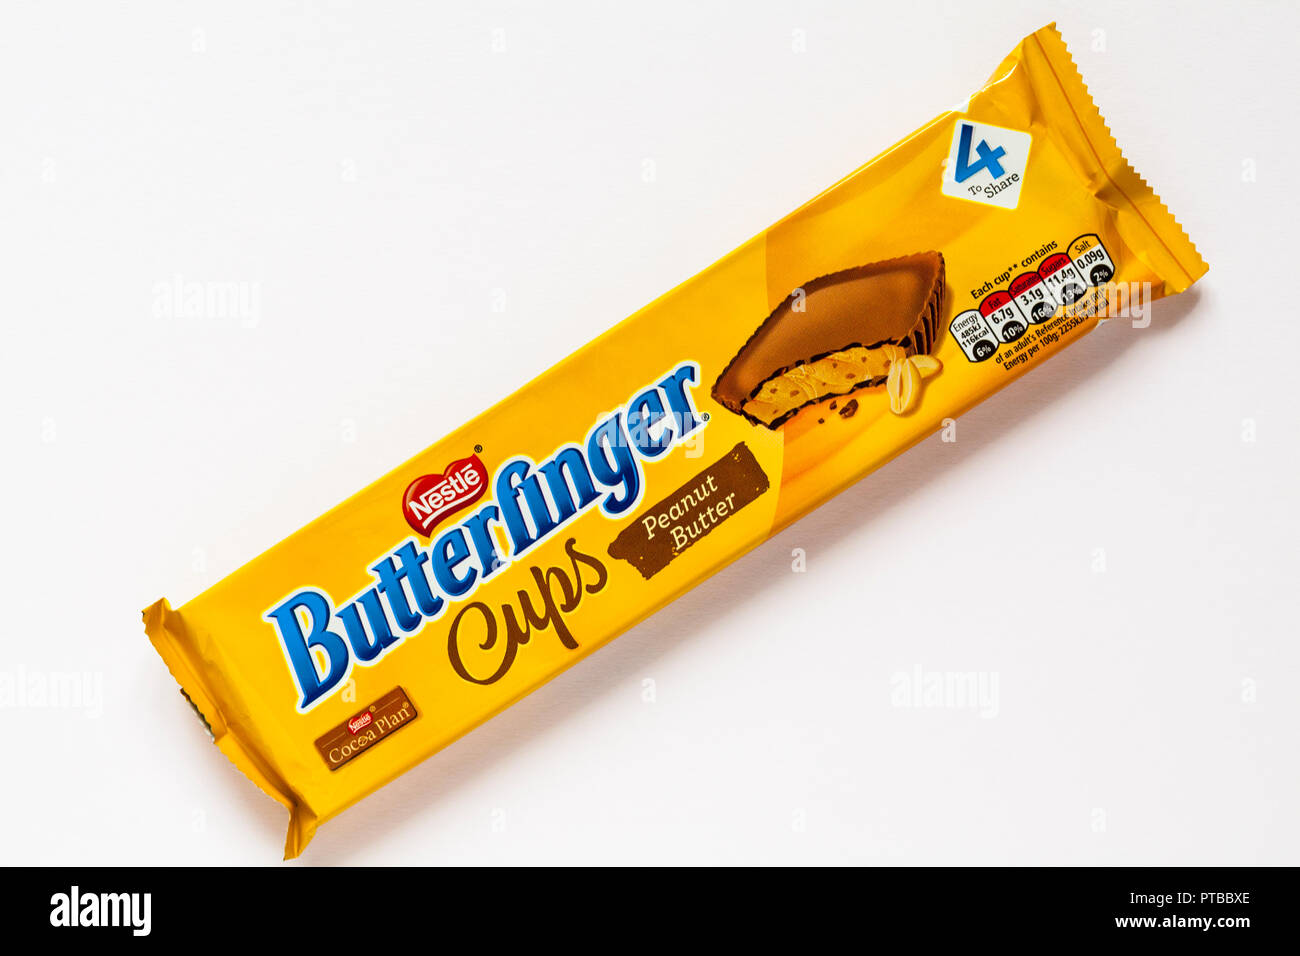 Pack von Nestle Butterfinger Peanut butter Cups Kekse auf weißem ...